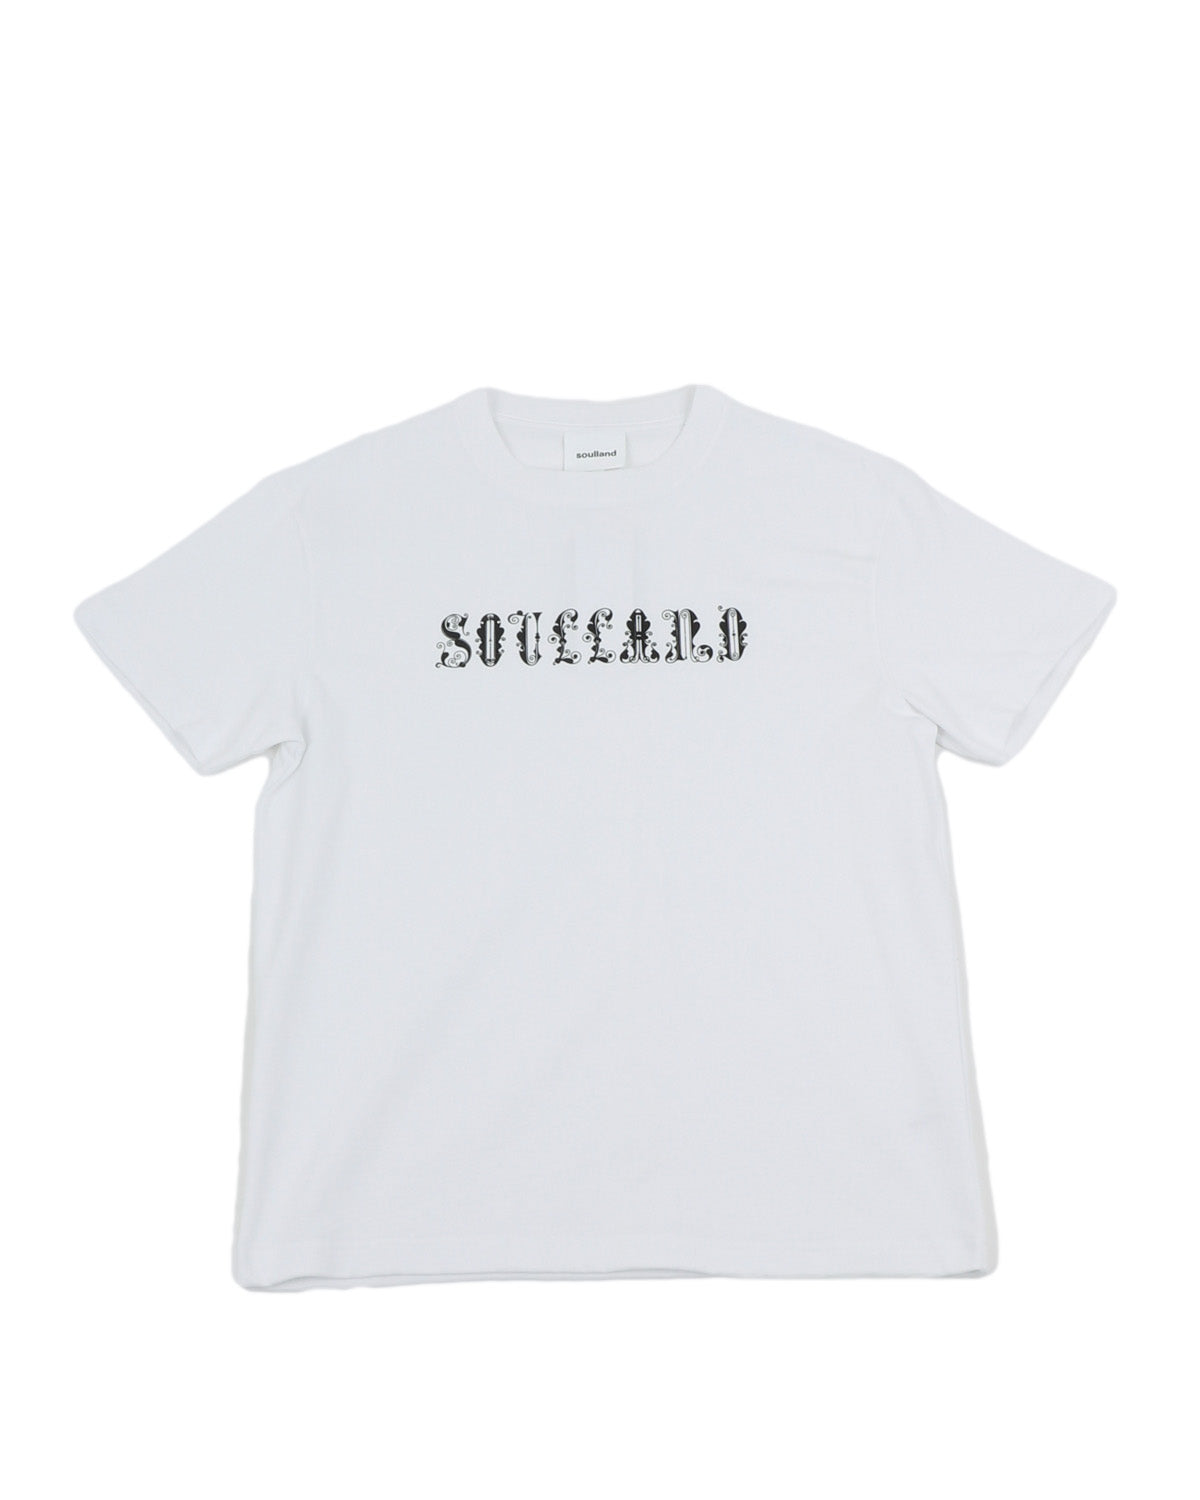 soulland_circus logo t-shirt_white_1_2